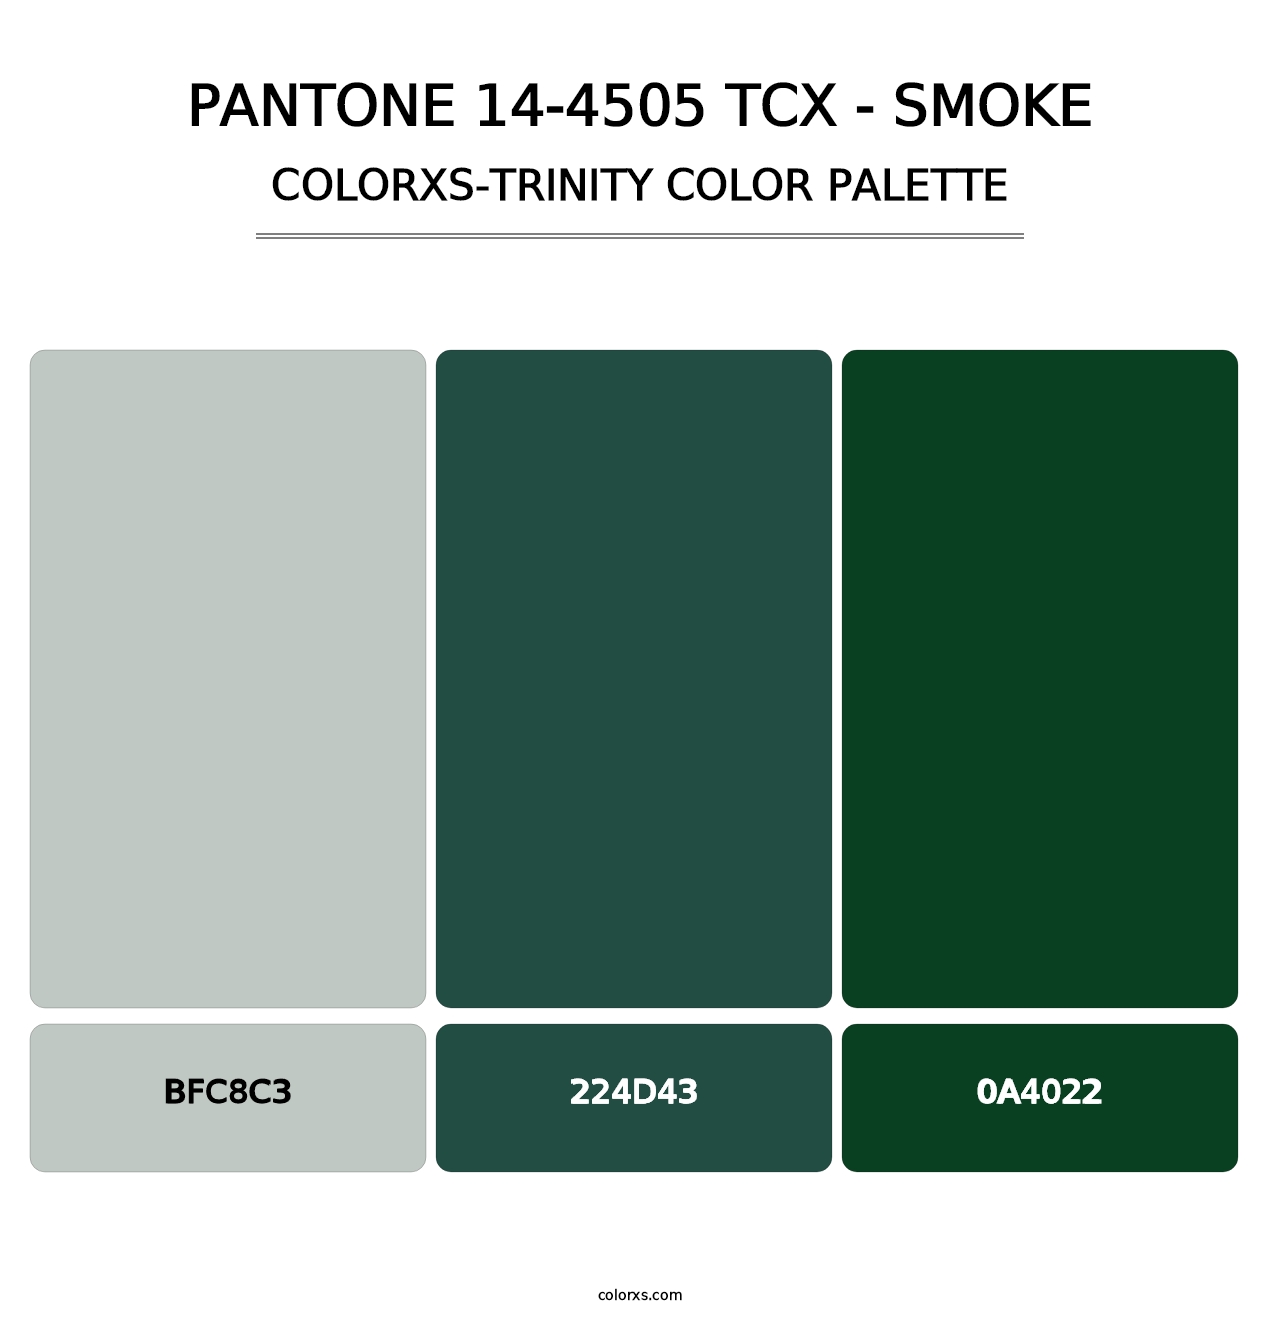 PANTONE 14-4505 TCX - Smoke - Colorxs Trinity Palette